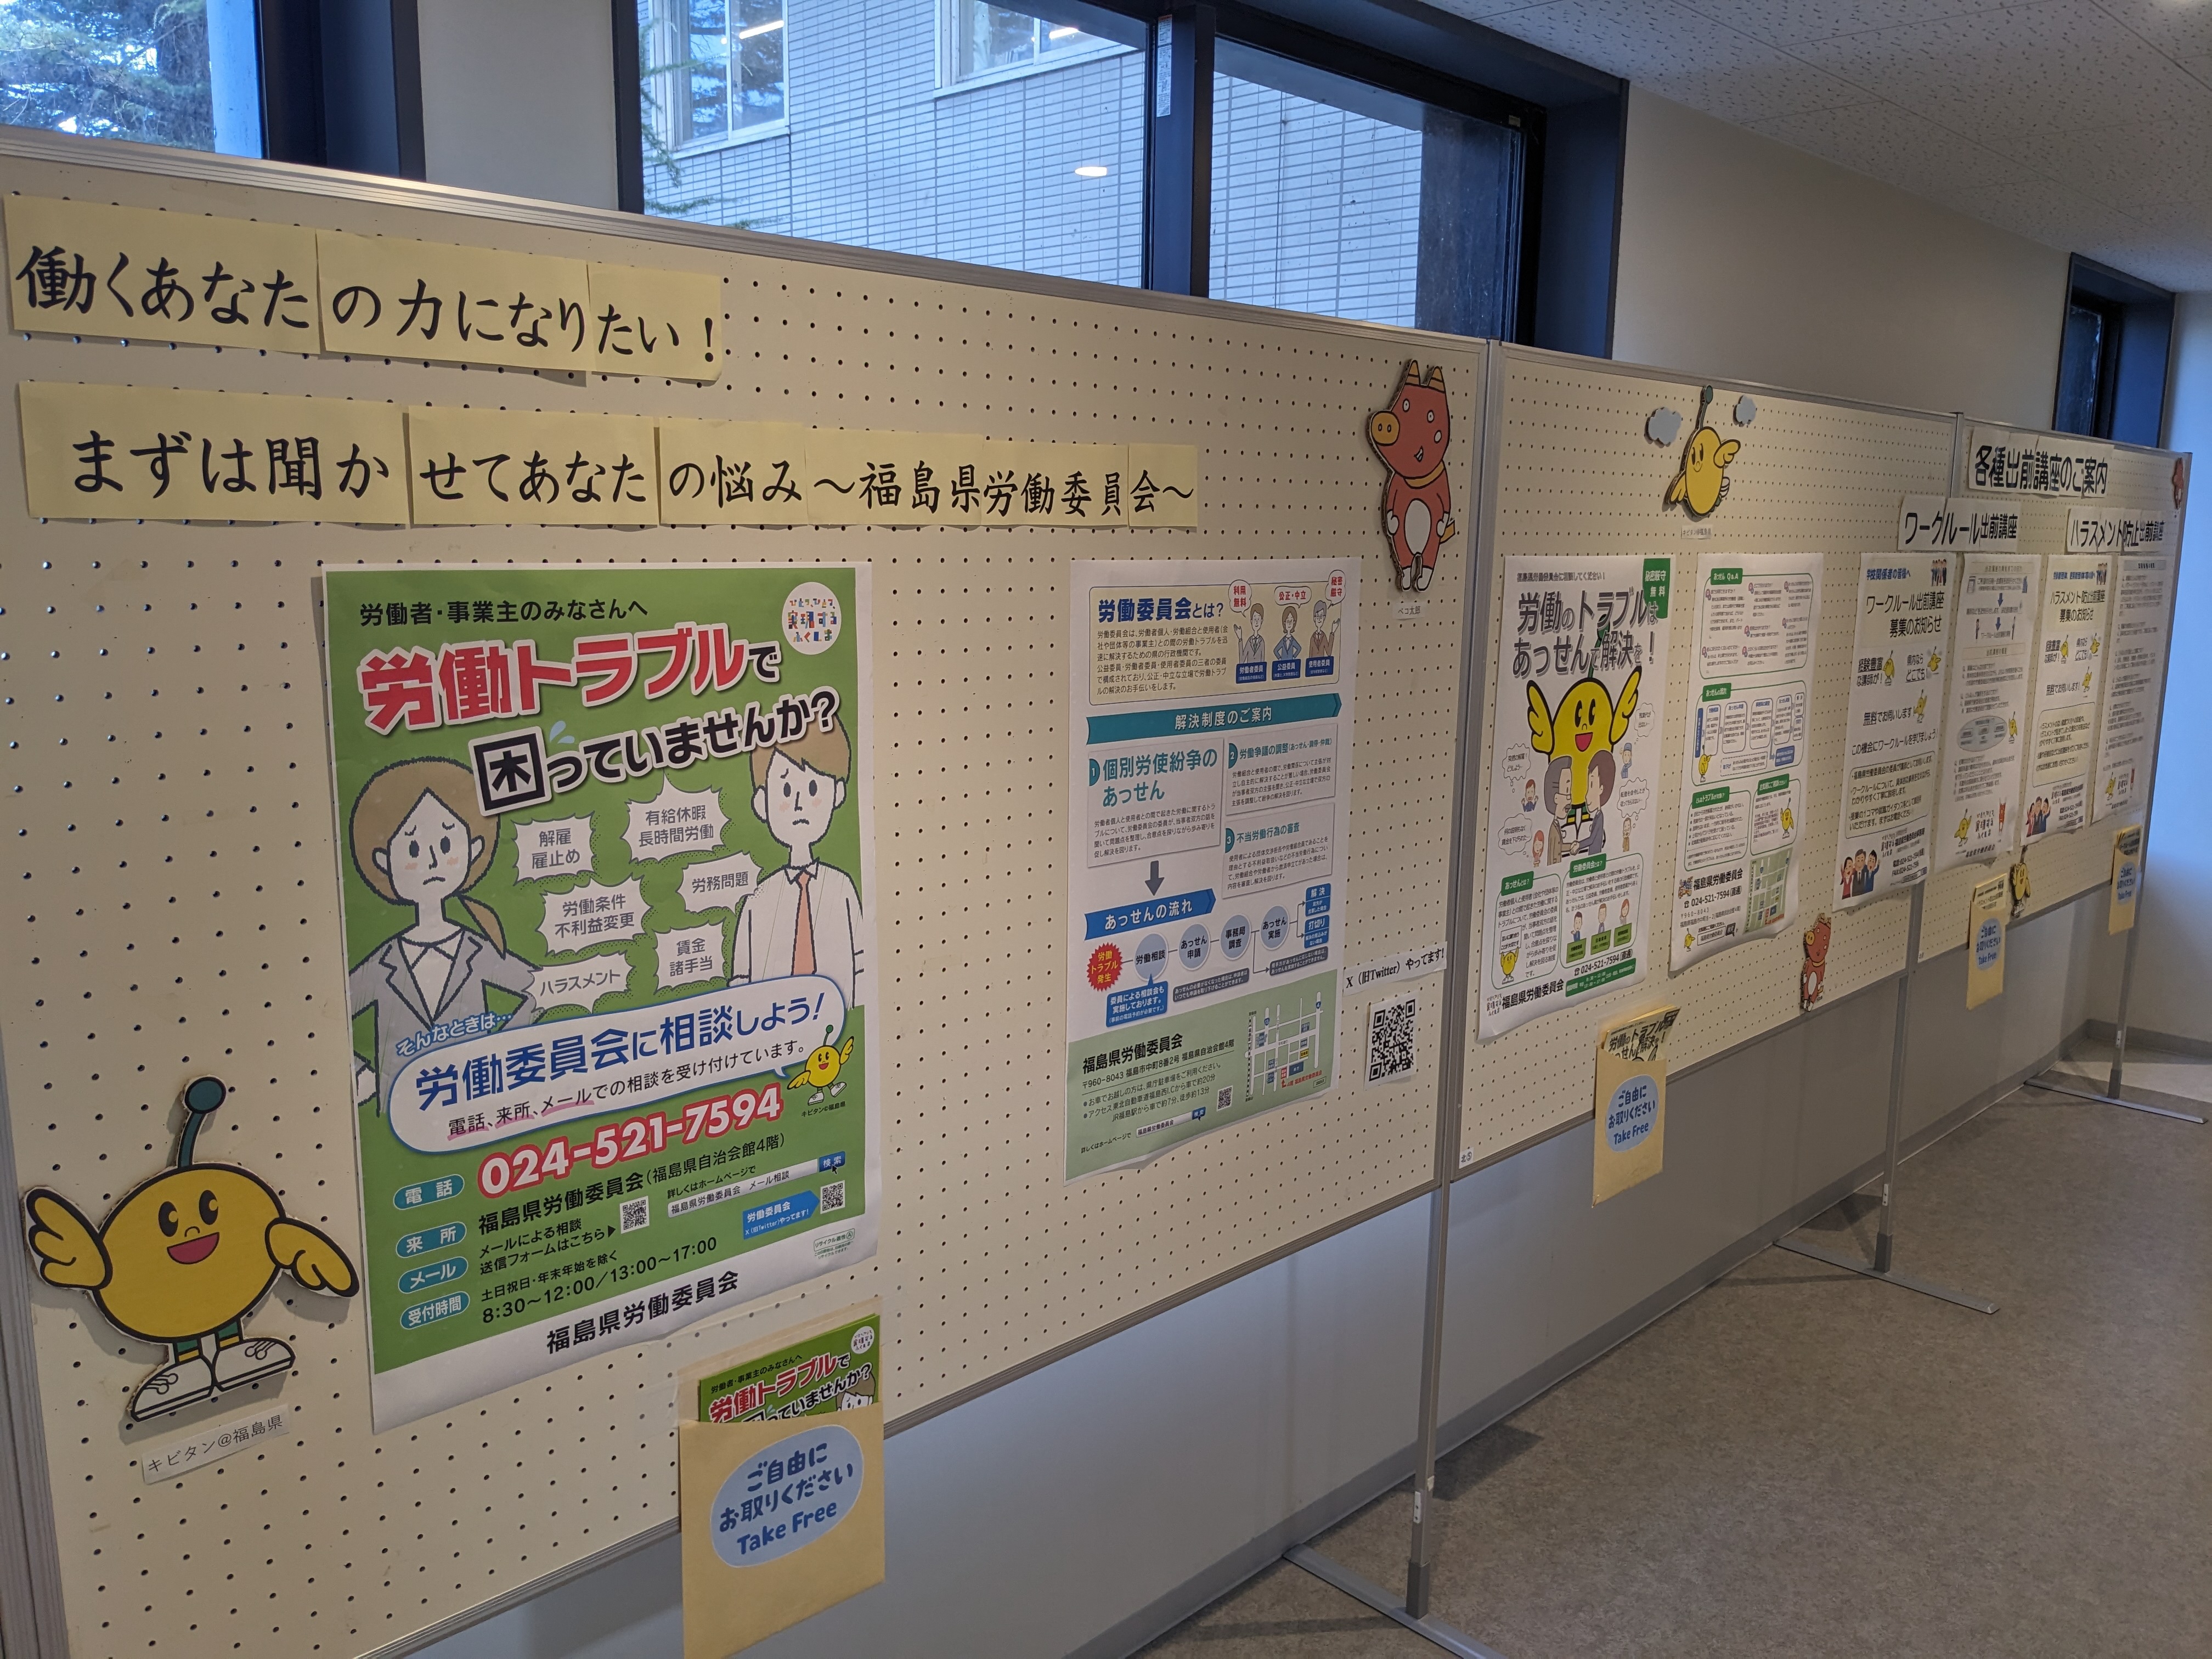 県庁舎の展示スペースに労働委員会を紹介するポスターが飾られている